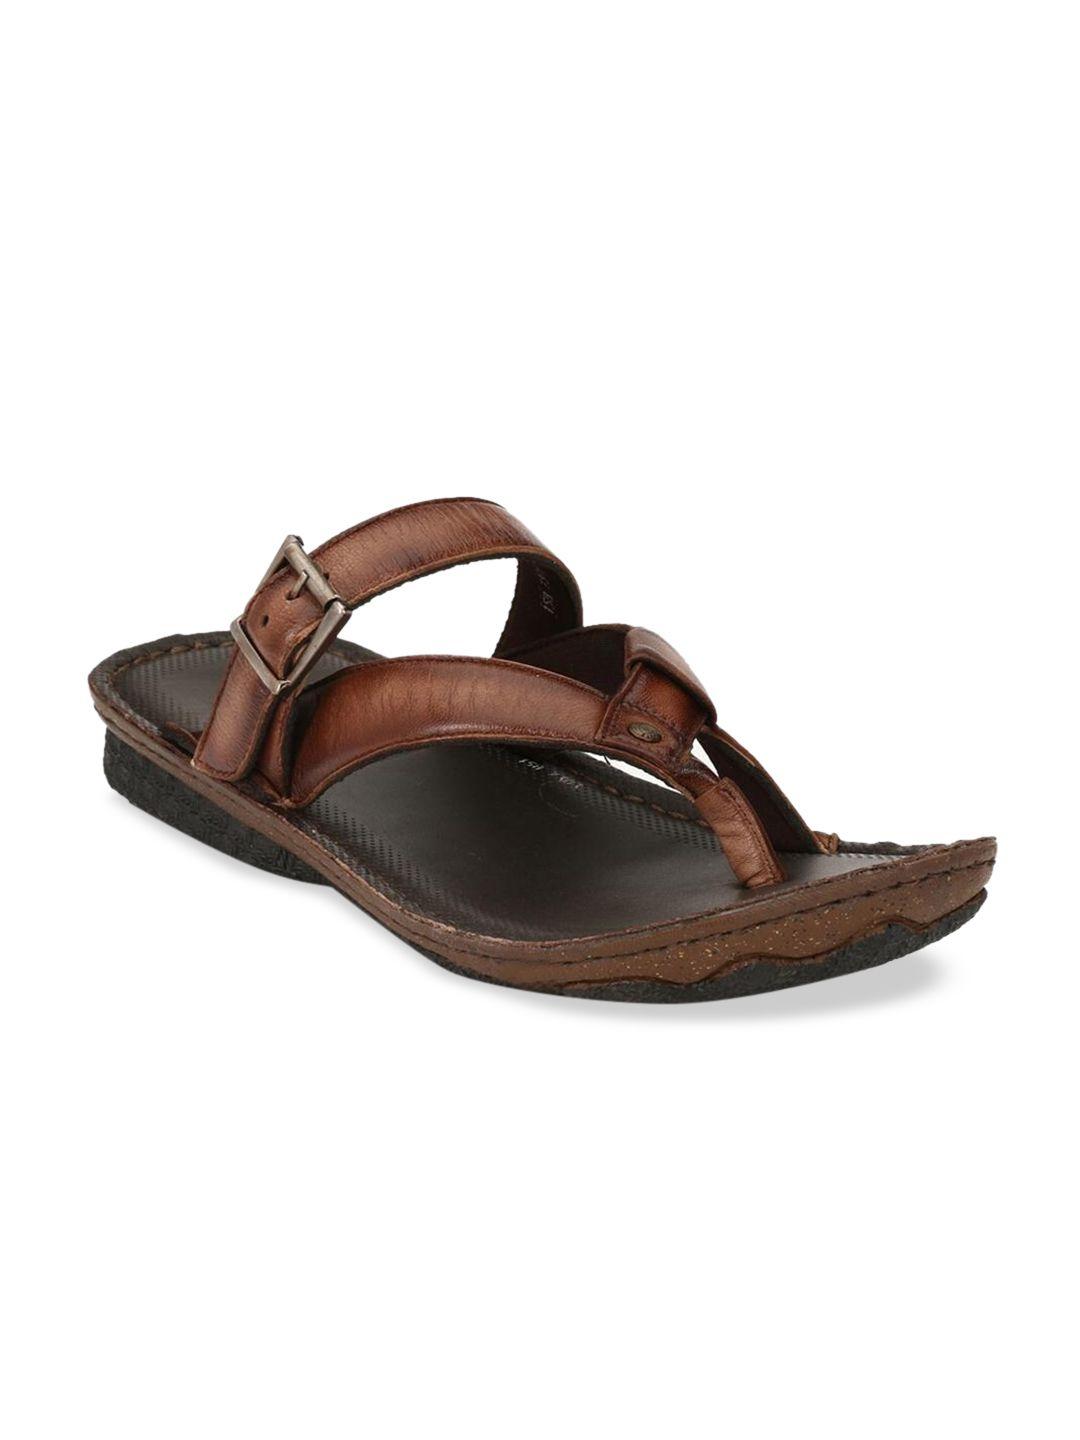 hitz men brown leather comfort sandals